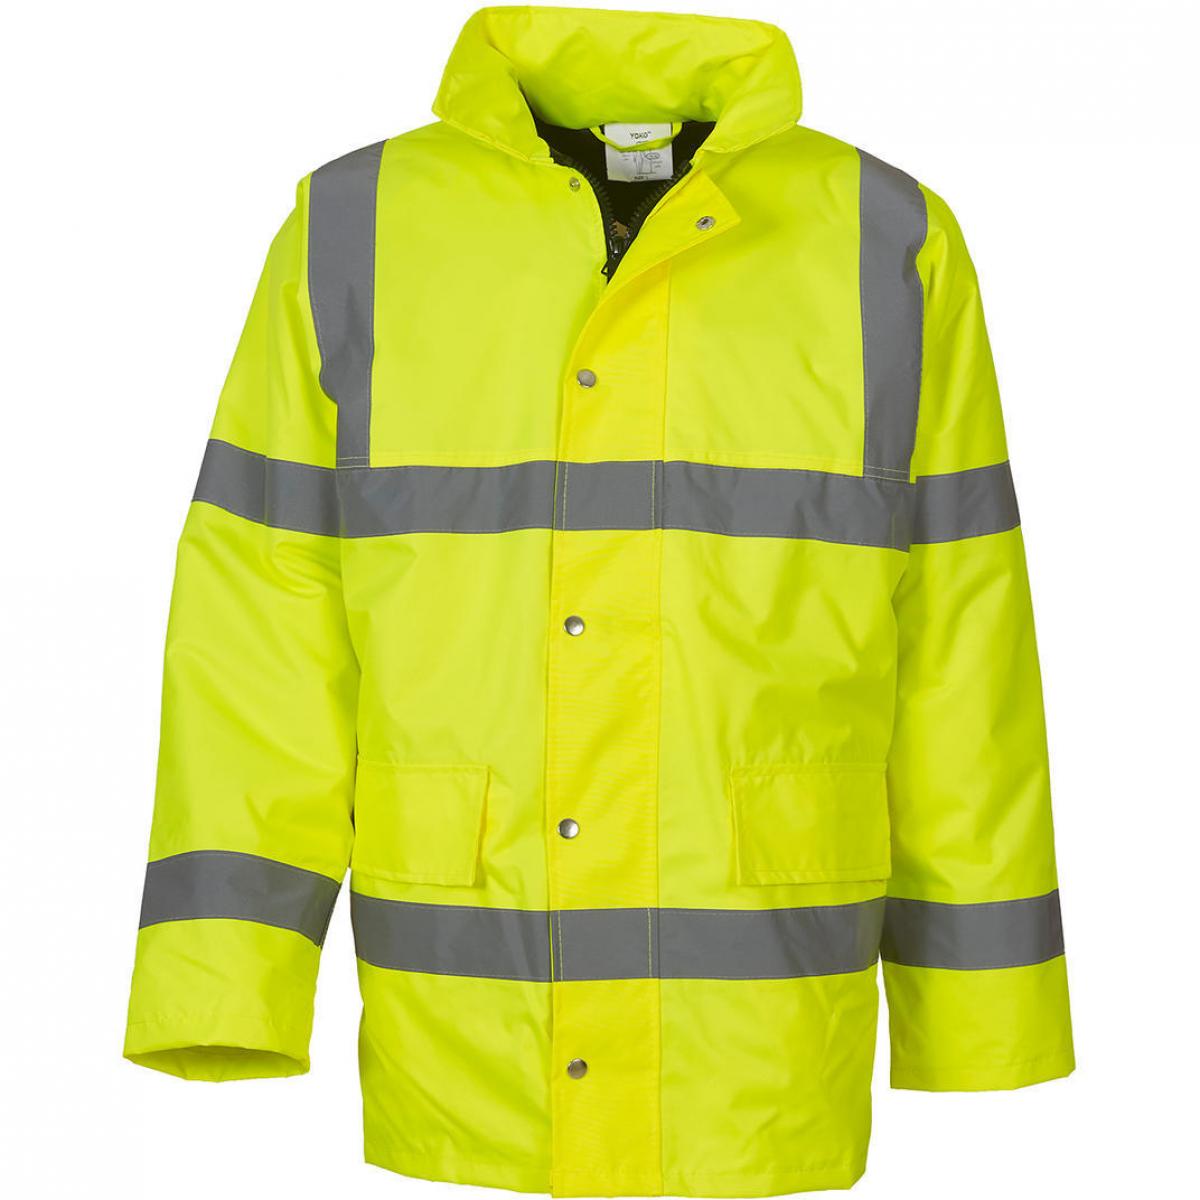 Hersteller: YOKO Herstellernummer: HVP300 Artikelbezeichnung: Fluo Classic Motorway Jacket - HiVis Arbeitsjacke Farbe: Fluo Yellow